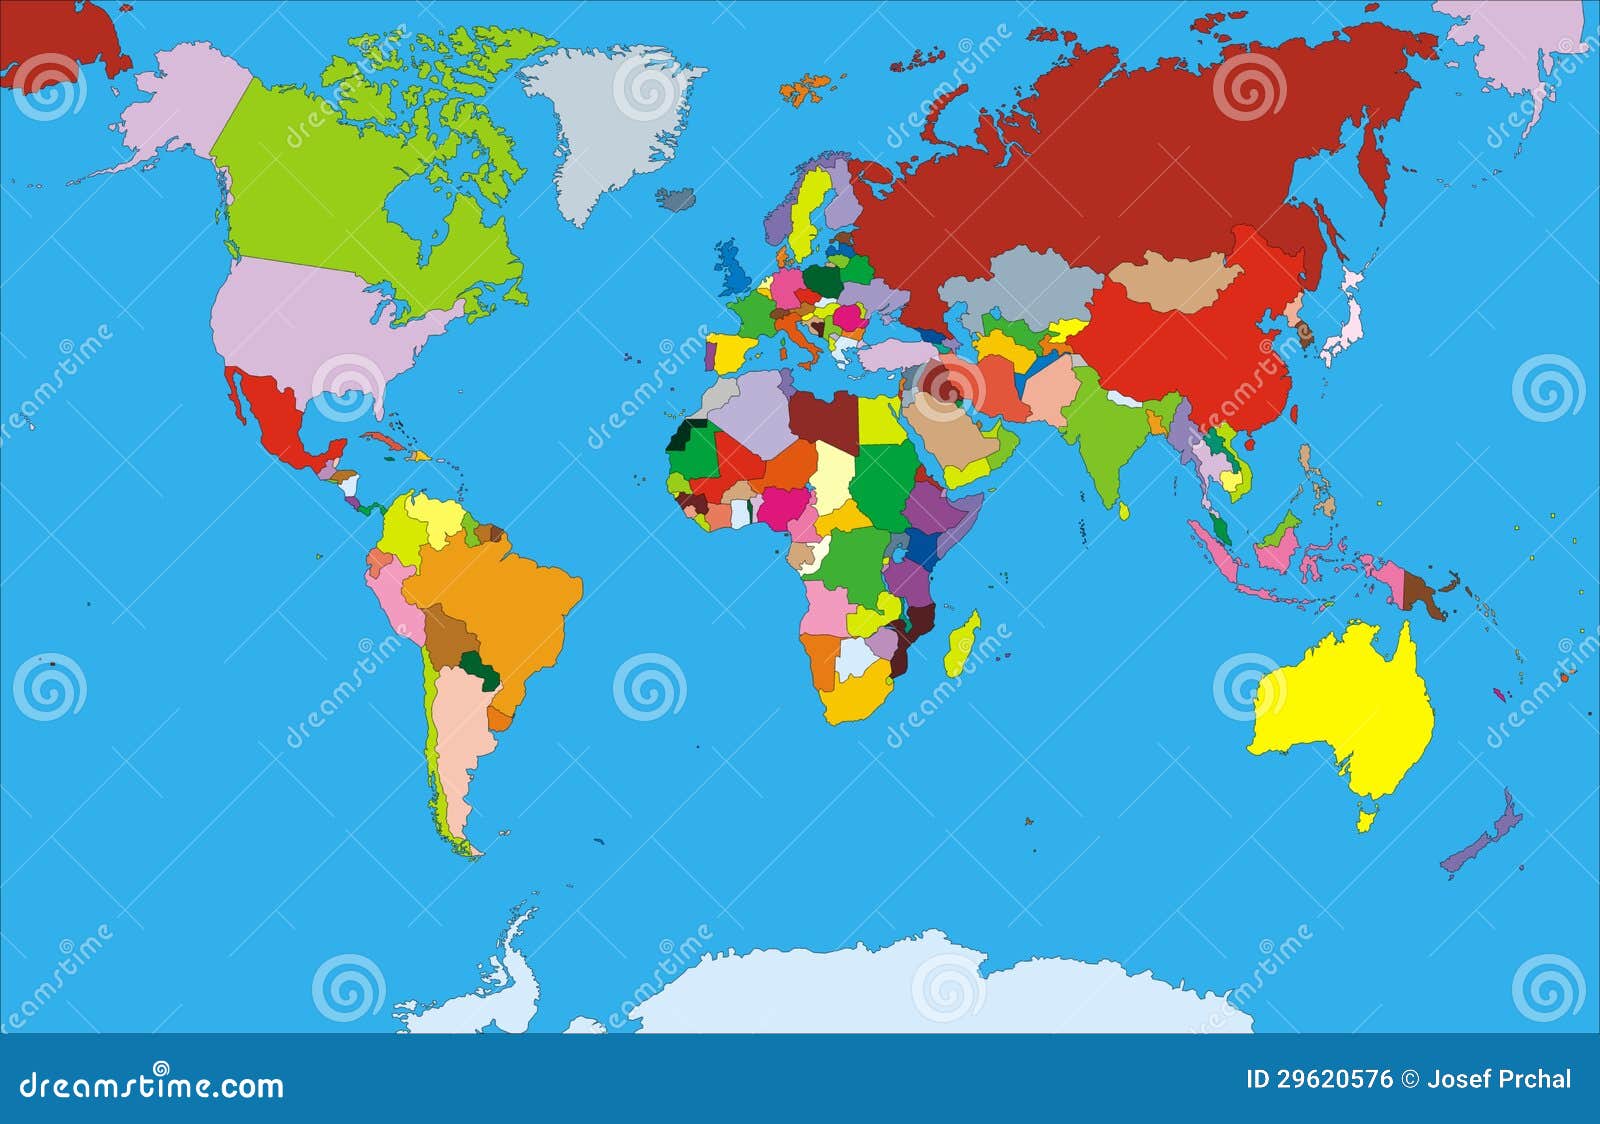 世界地图图片